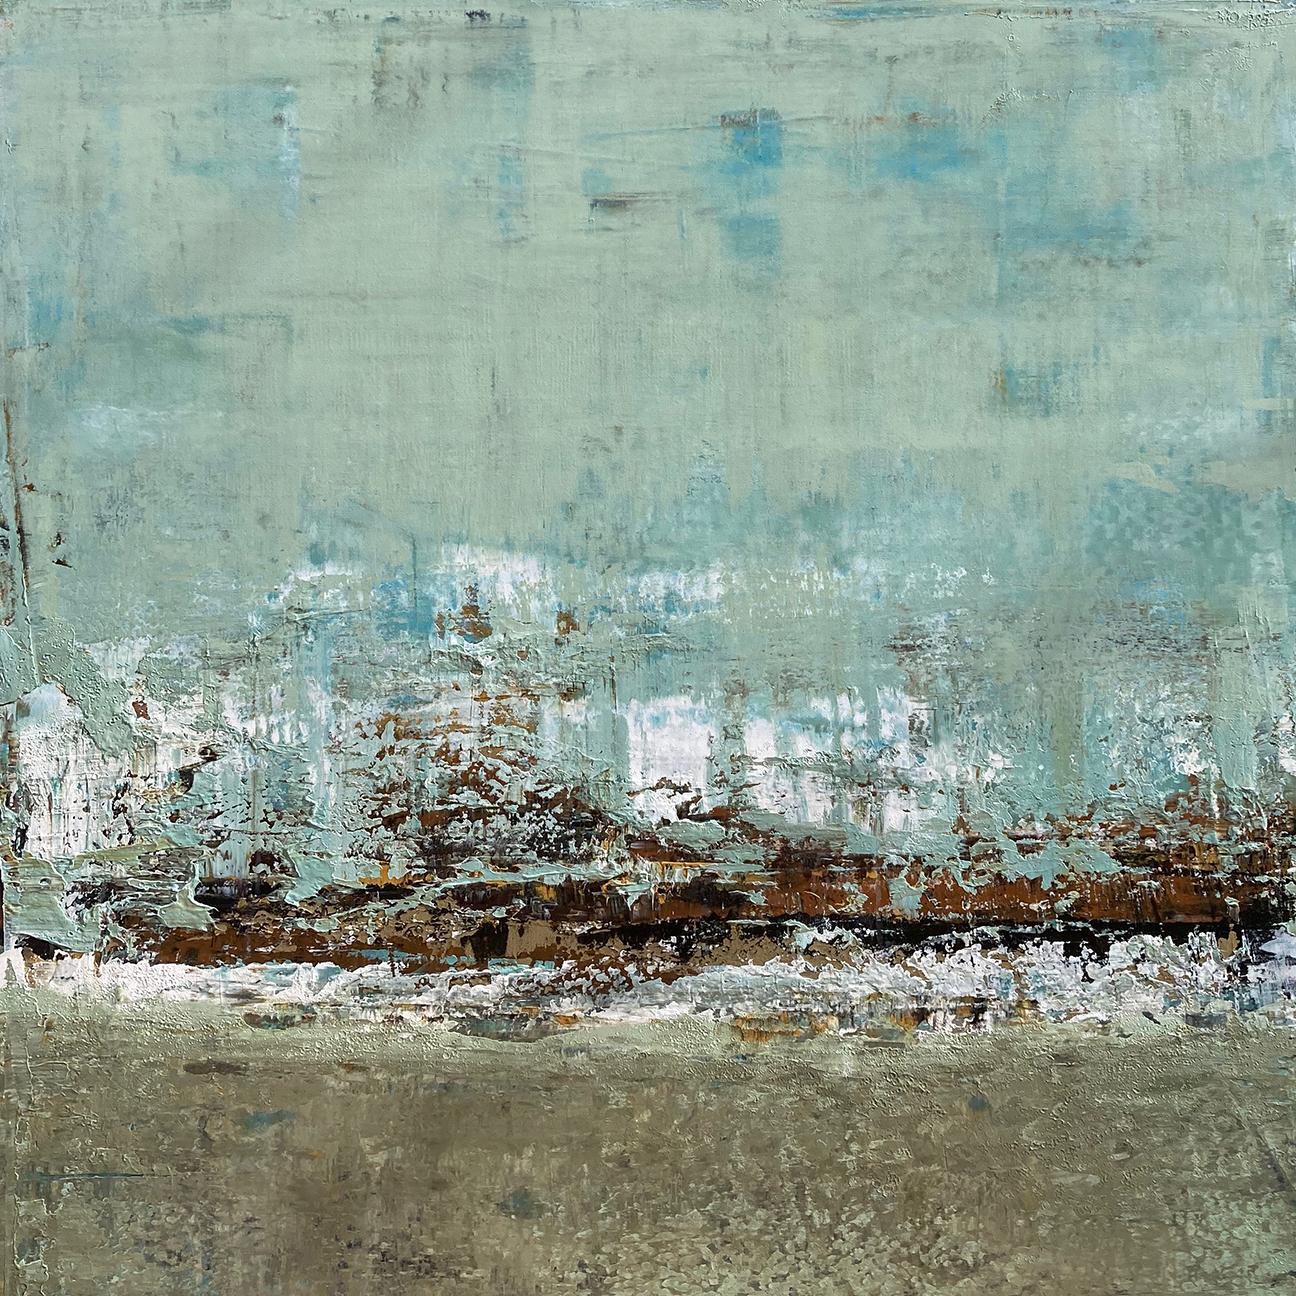 Sans titre, n° 4 - Peinture de paysage abstrait texturé contemporaine bleu/gris